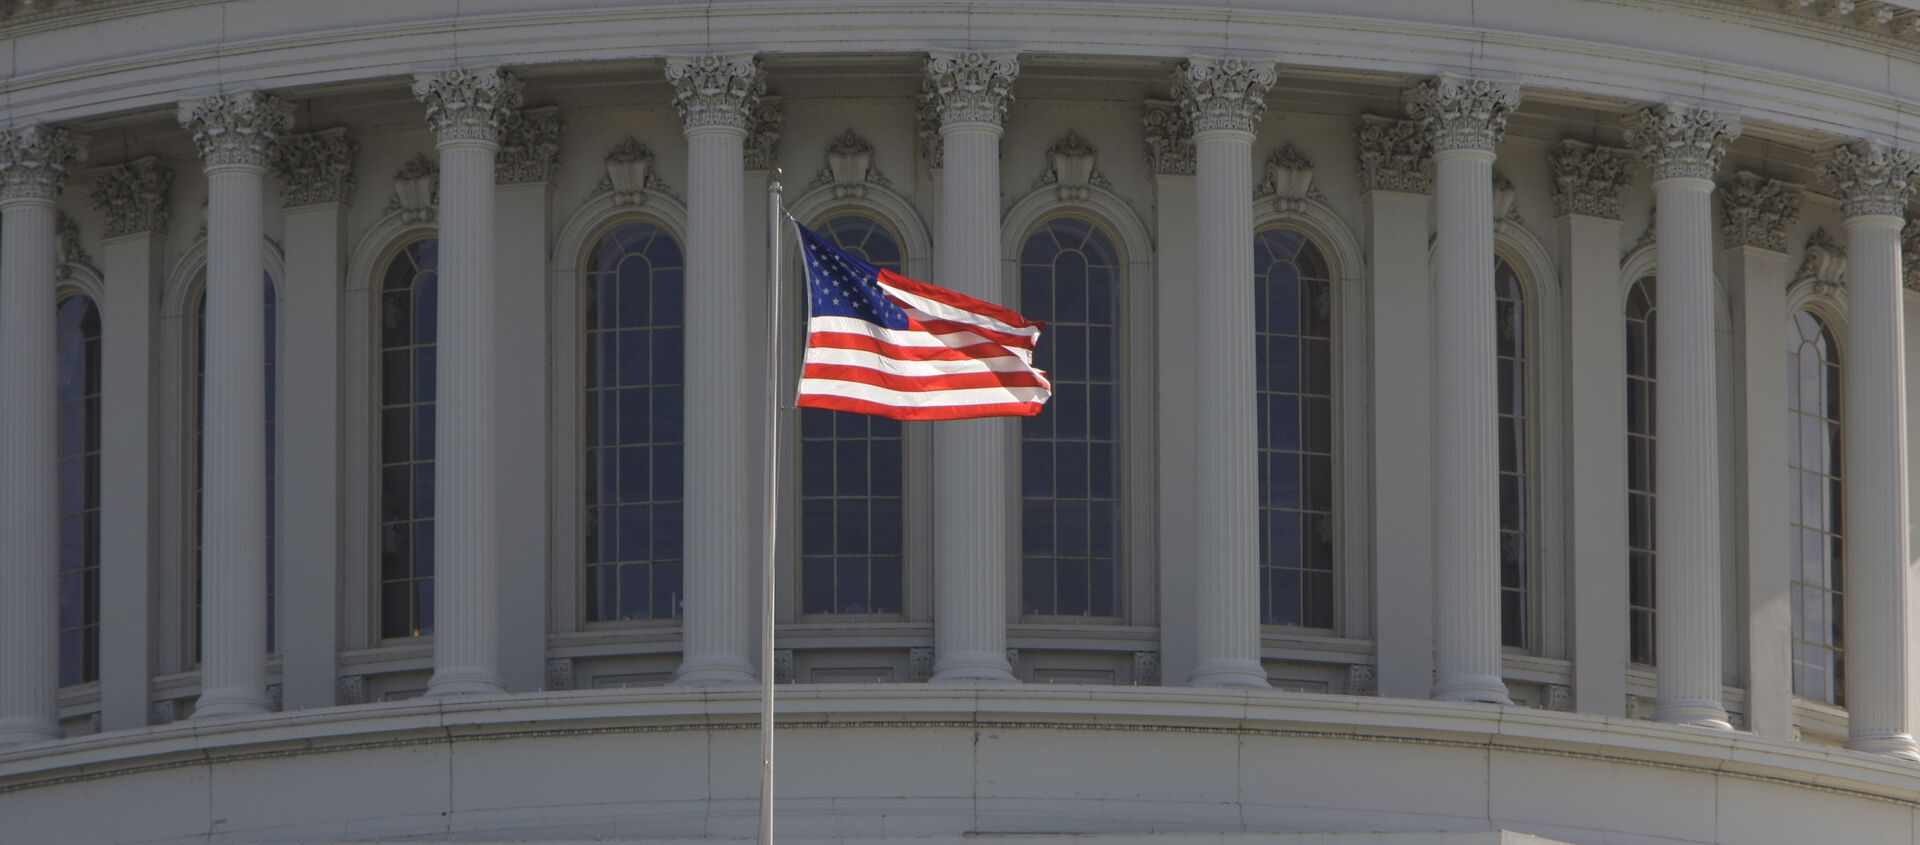 Капитолий, здание в Вашингтоне, где заседает конгресс США - Sputnik Абхазия, 1920, 18.07.2021